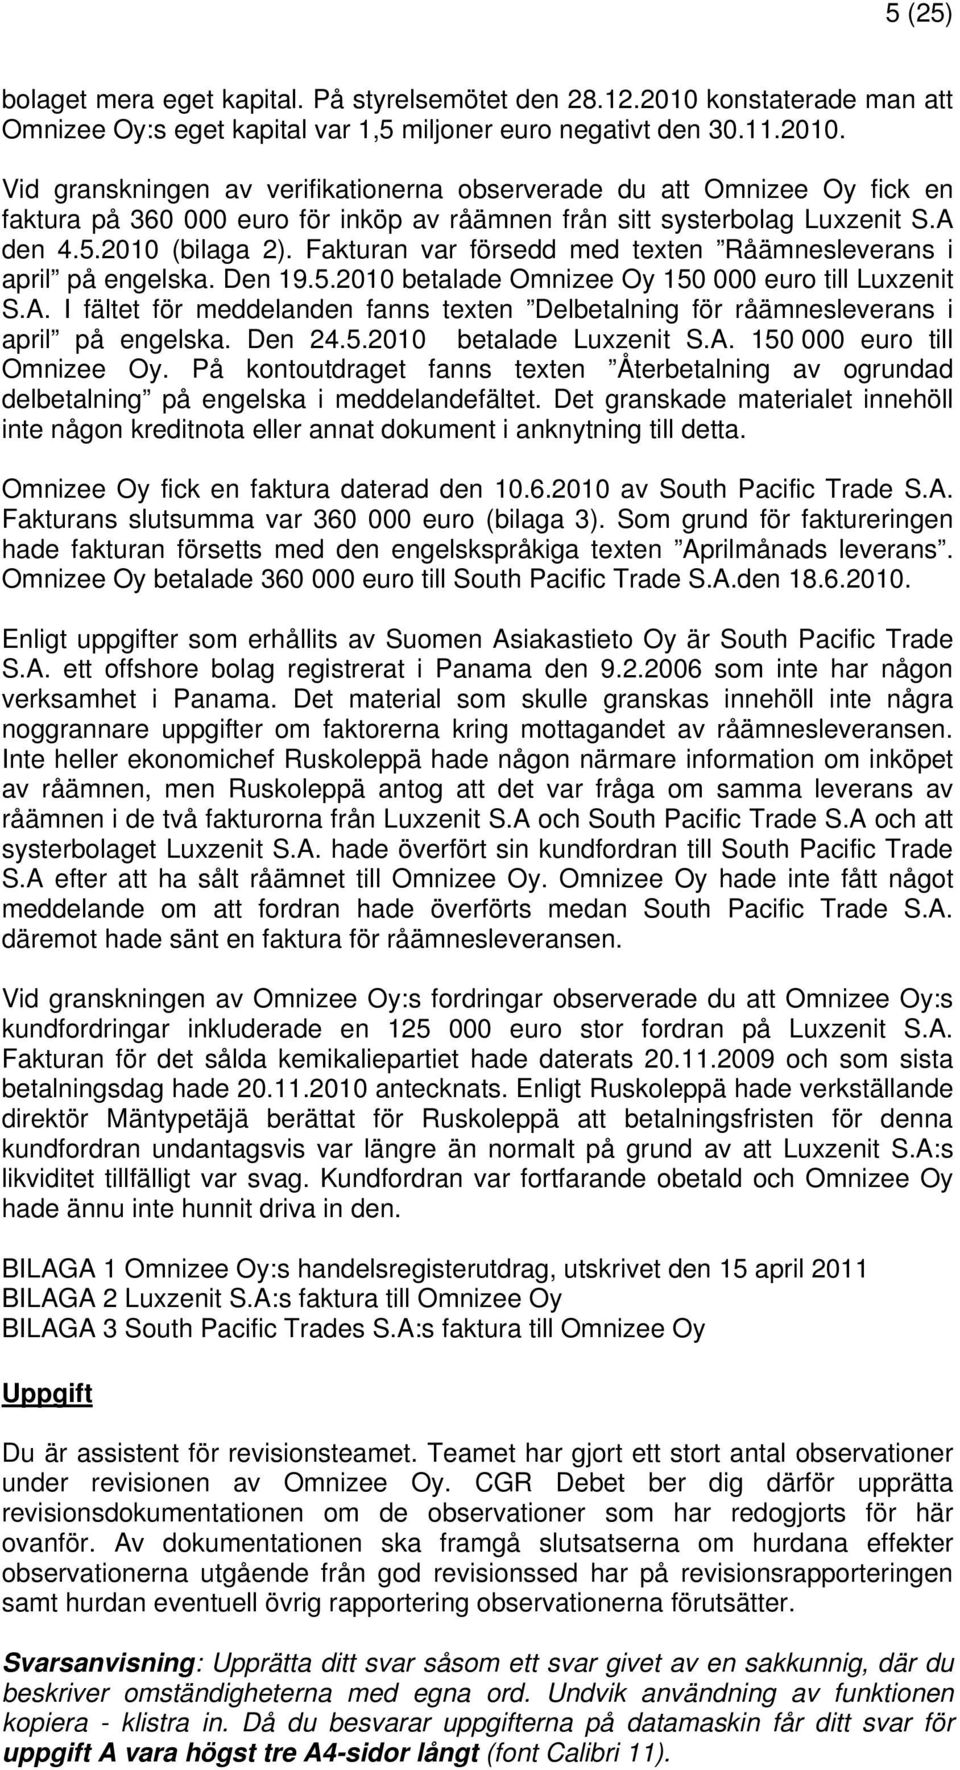 Vid granskningen av verifikationerna observerade du att Omnizee Oy fick en faktura på 360 000 euro för inköp av råämnen från sitt systerbolag Luxzenit S.A den 4.5.2010 (bilaga 2).